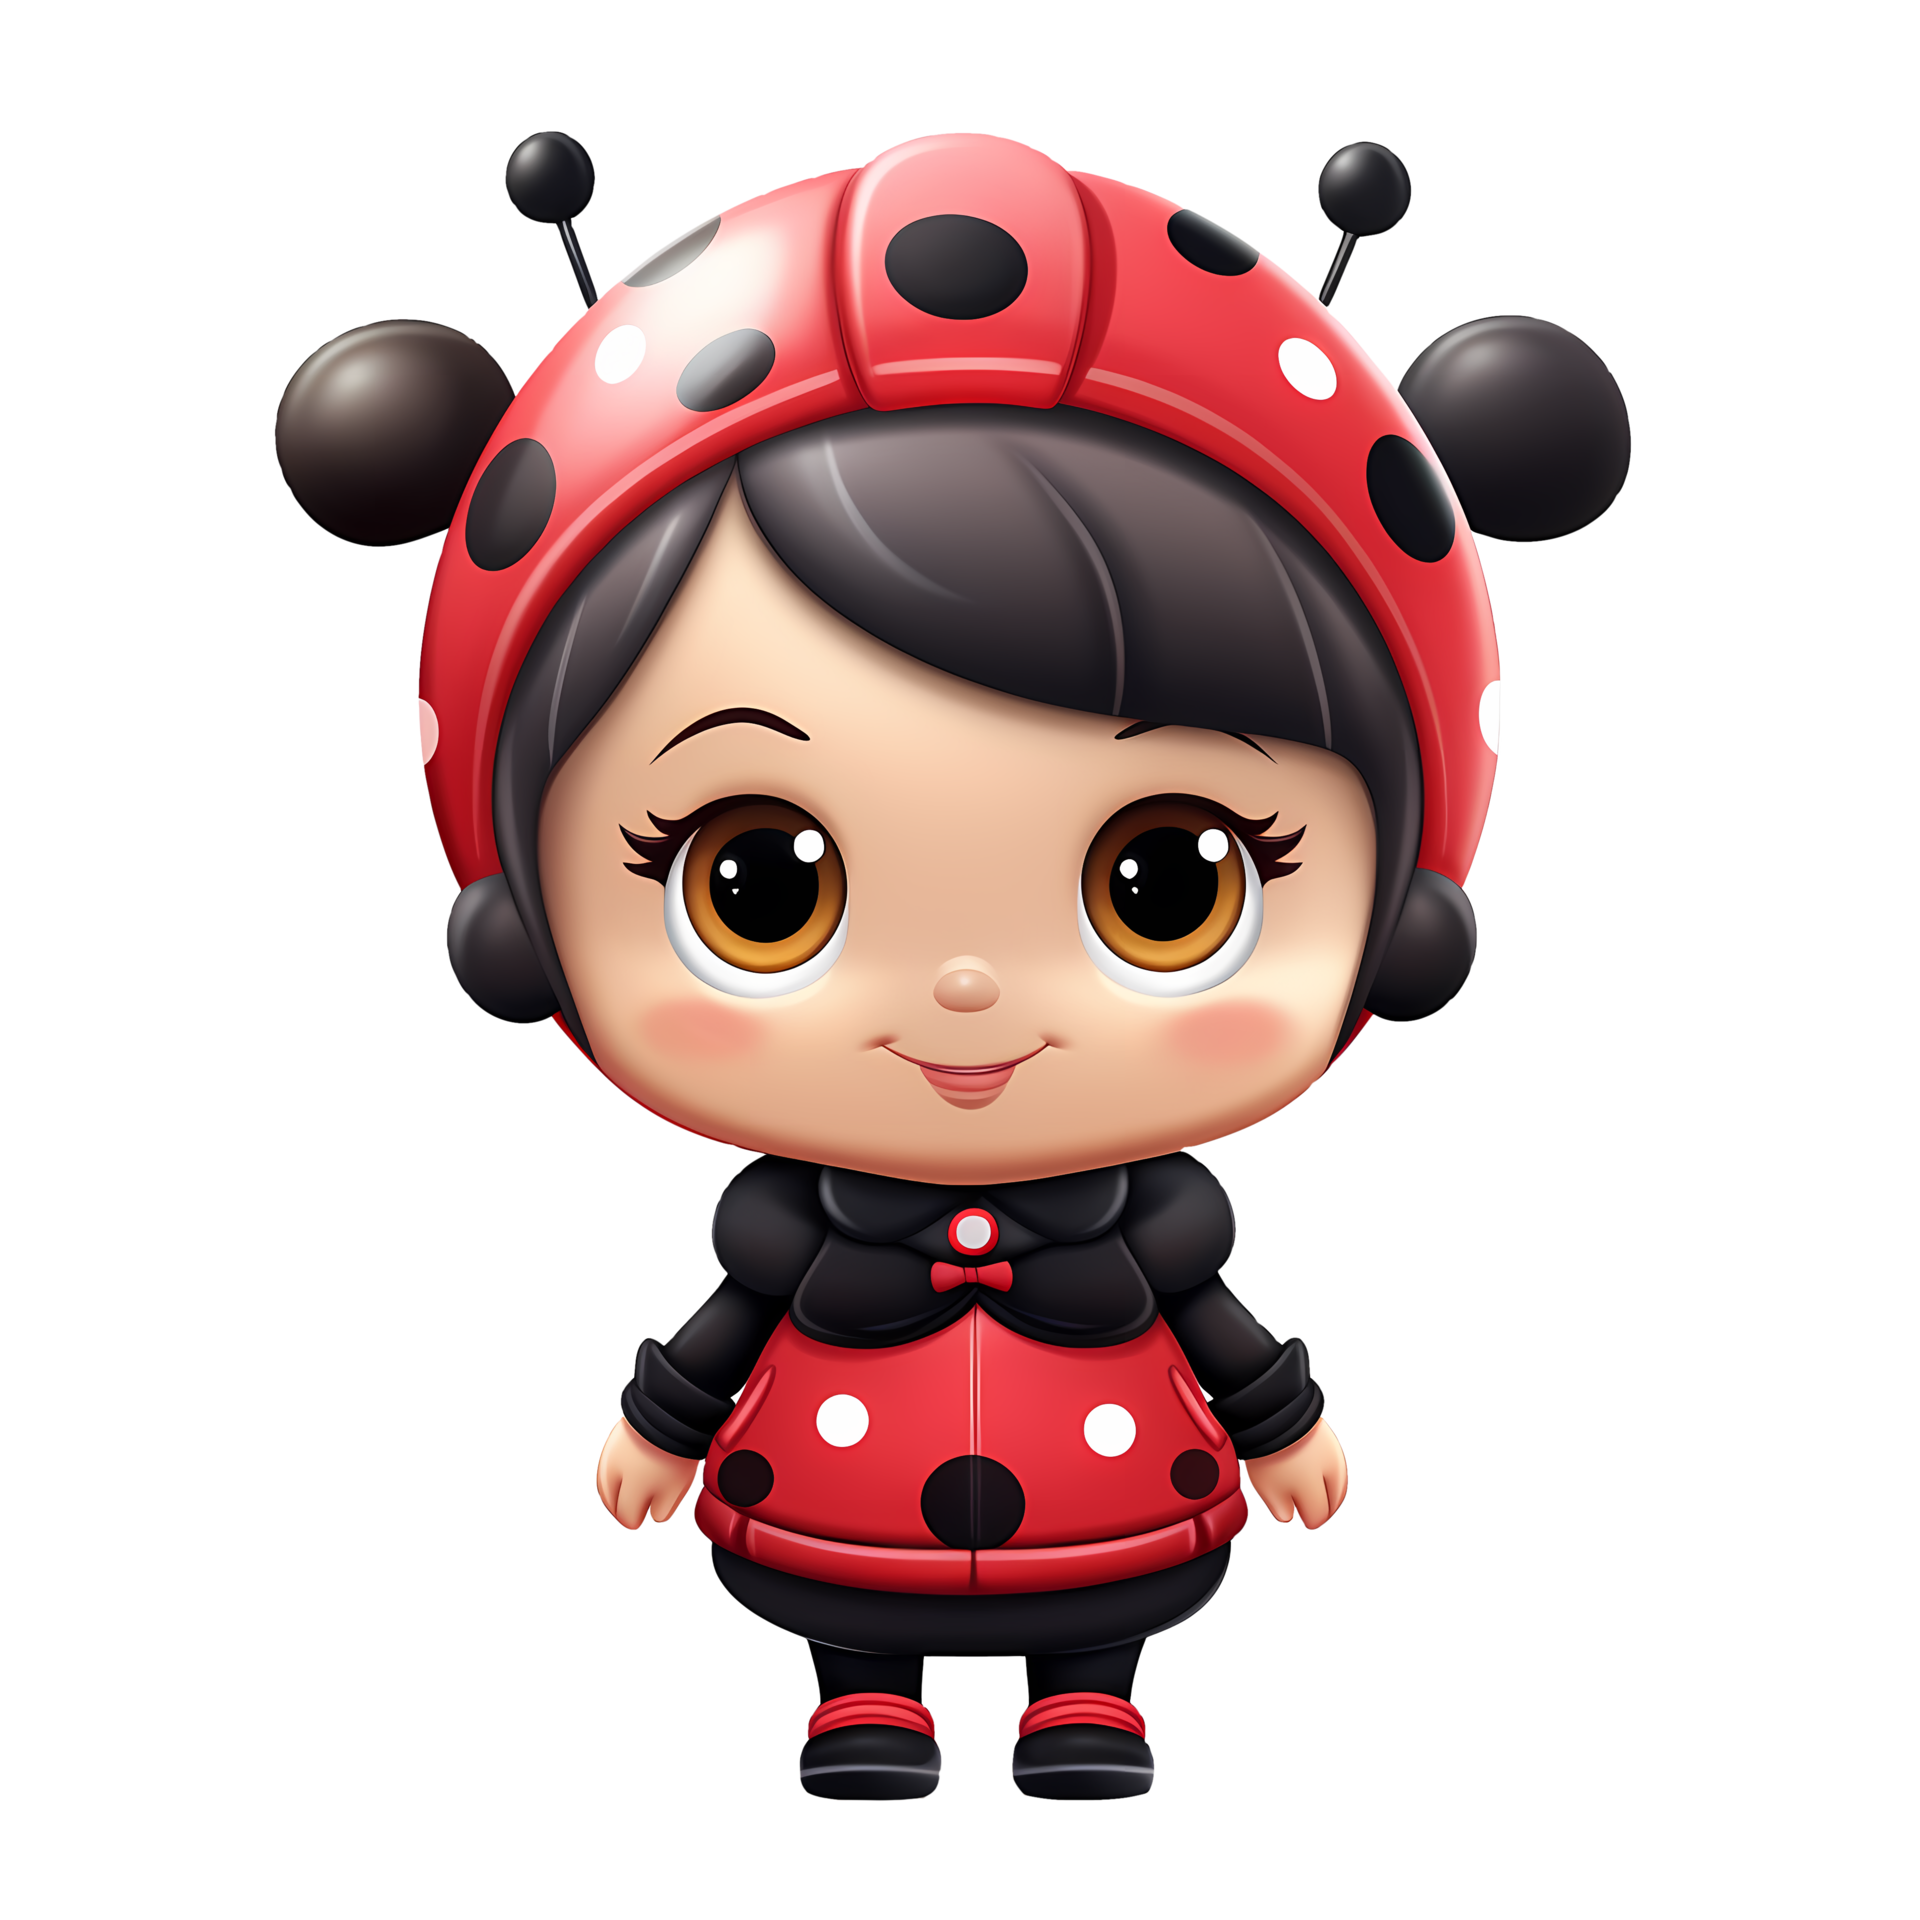 Ladybugs PNG - Ladybug, Miraculous Ladybug, Ladybug Cartoon, Cute